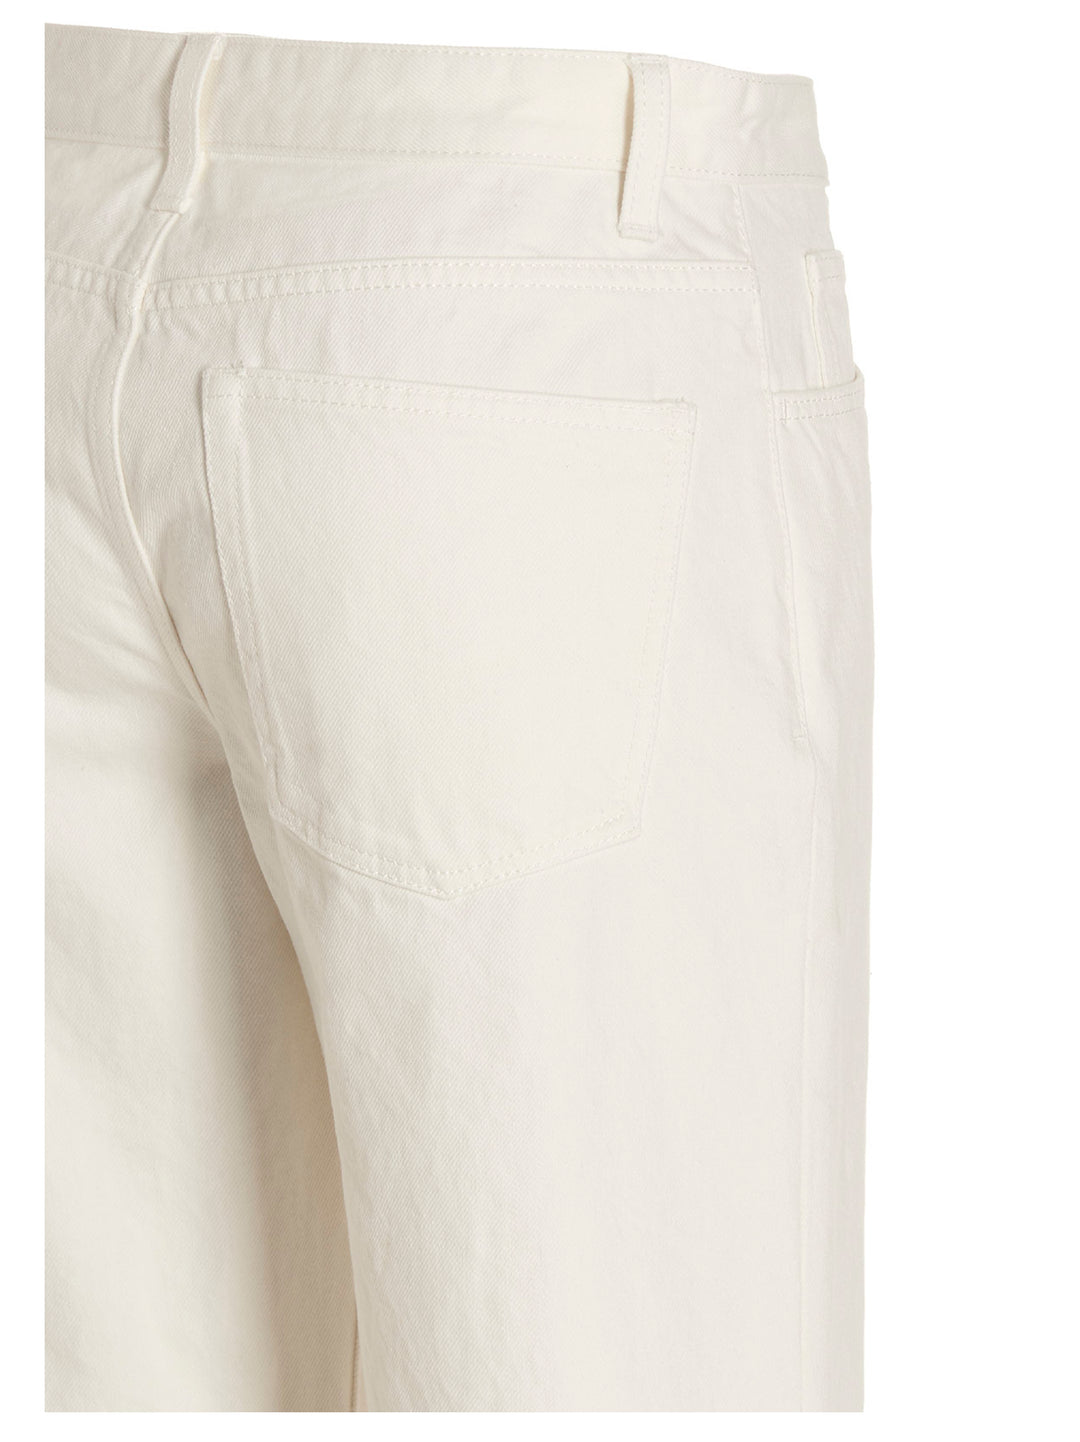 Eglitta Jeans Bianco